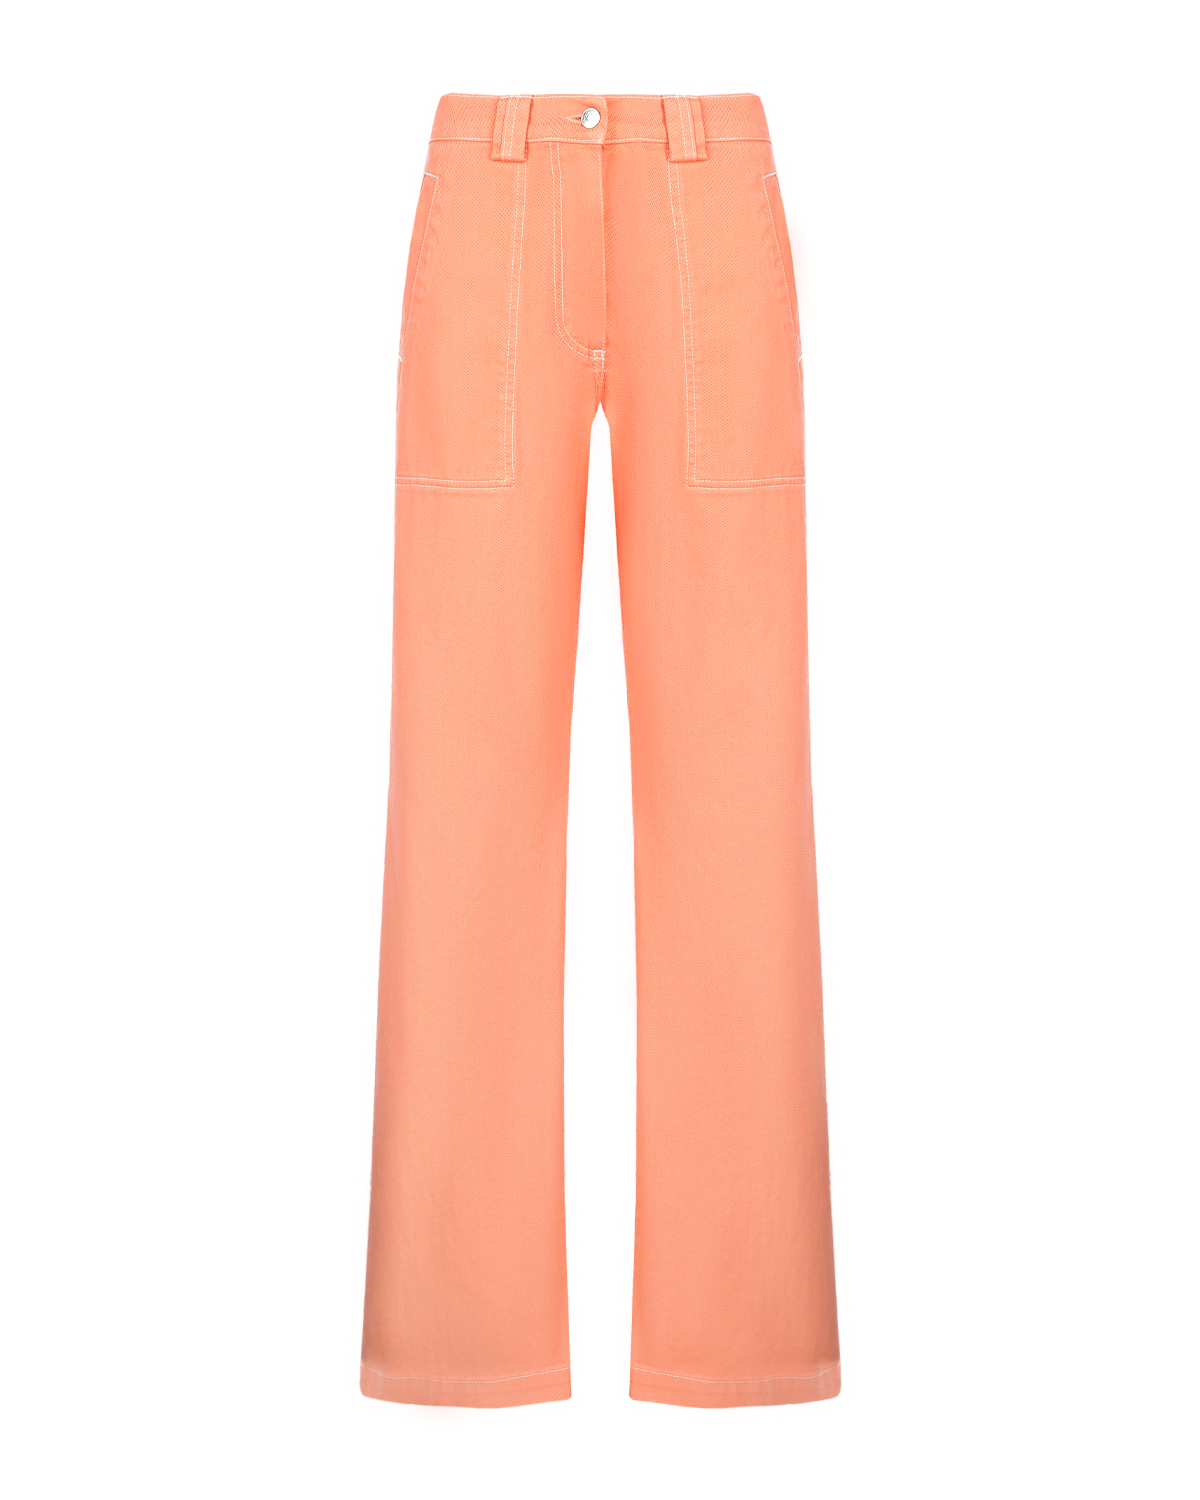 Оранжевые брюки с накладными карманами MSGM, размер 42, цвет оранжевый - фото 1